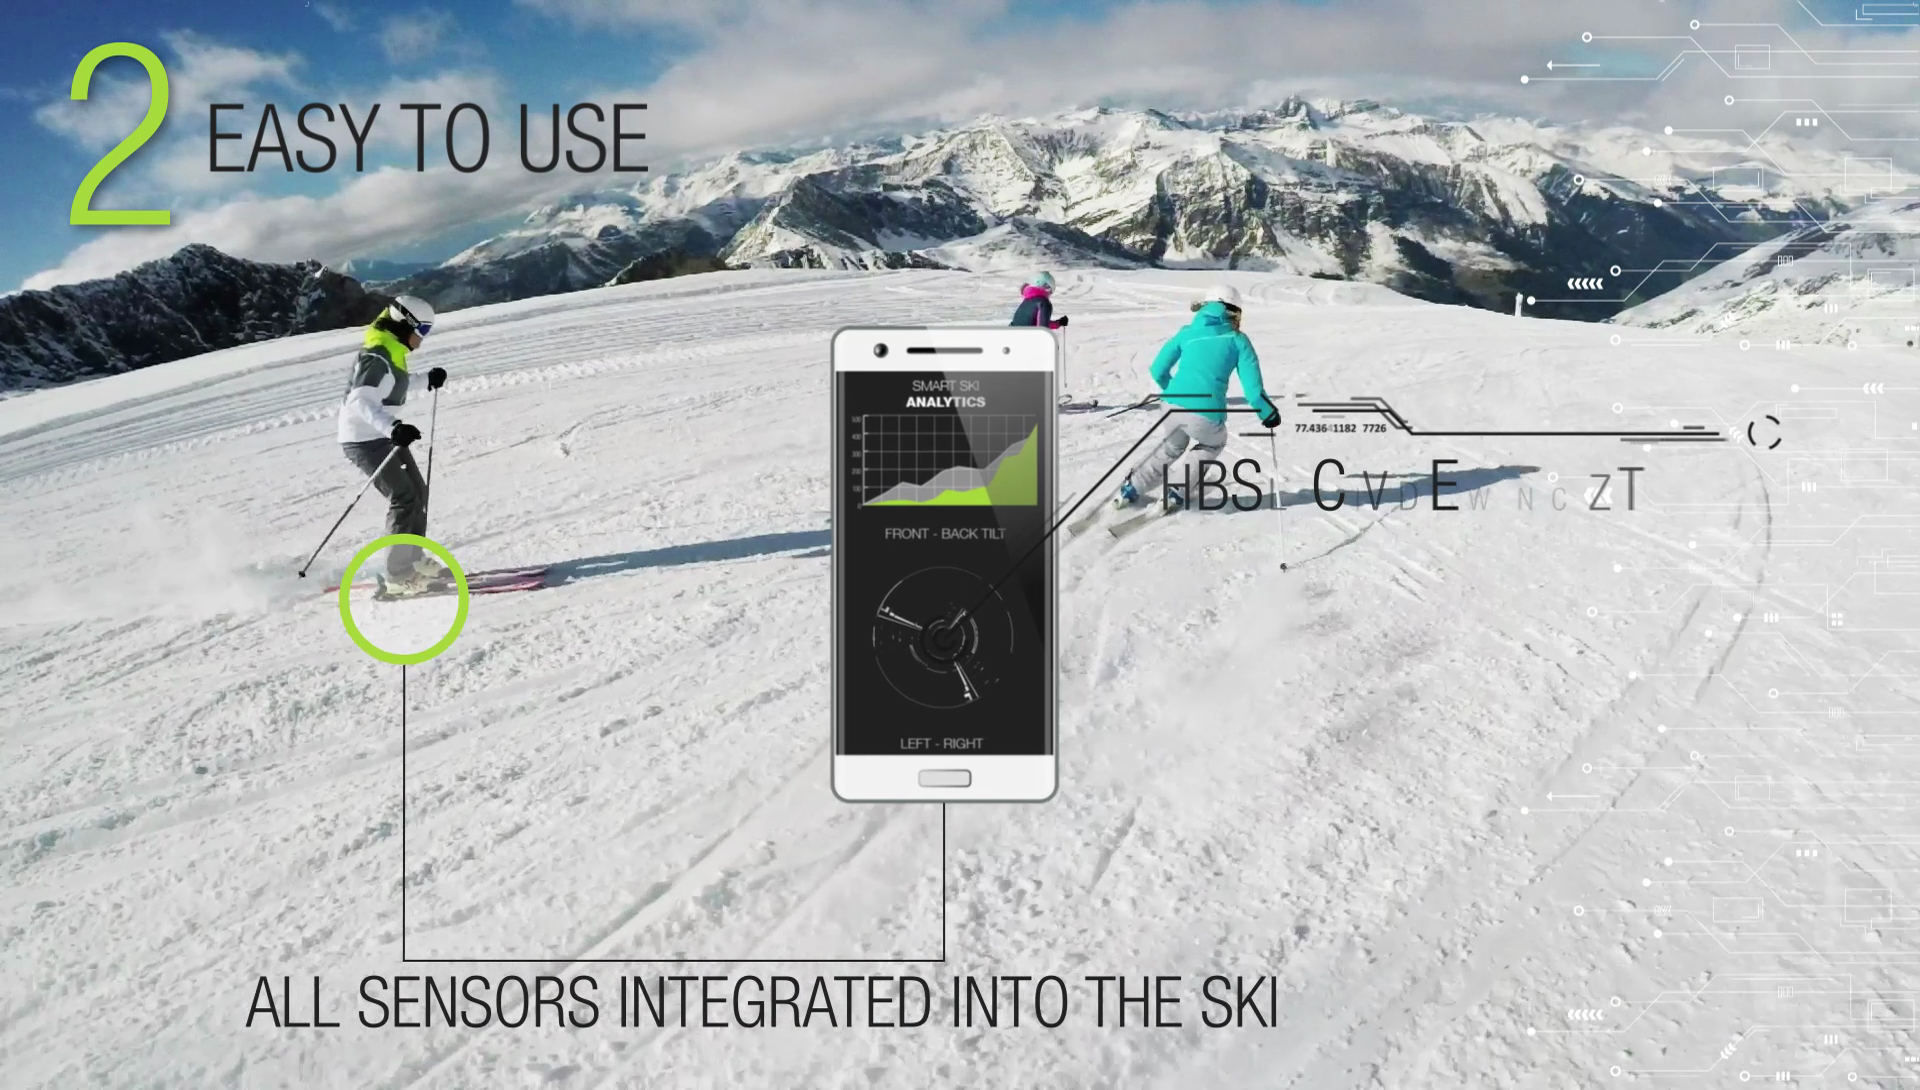 elan skis smart ski concept elan3